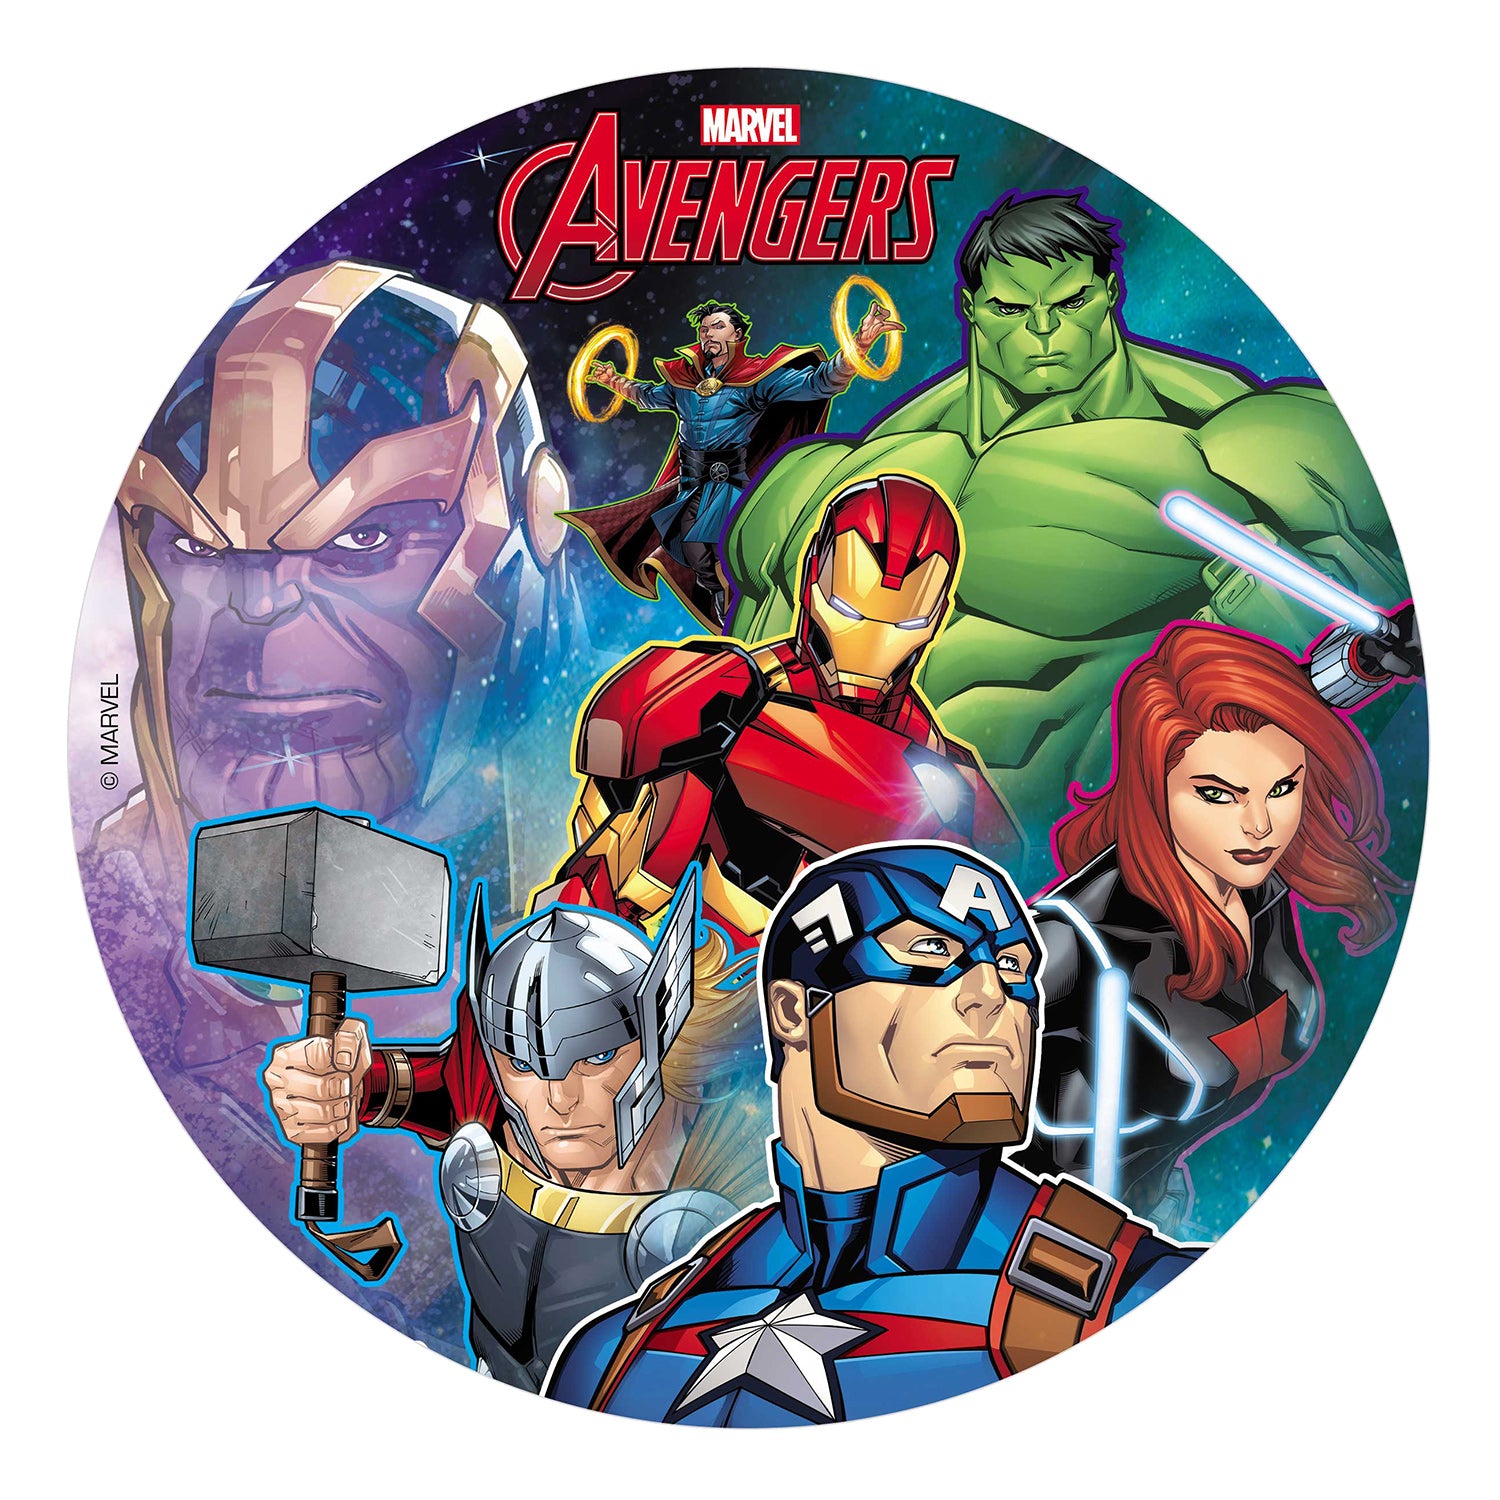 Los Vengadores (Marvel Avengers) 2